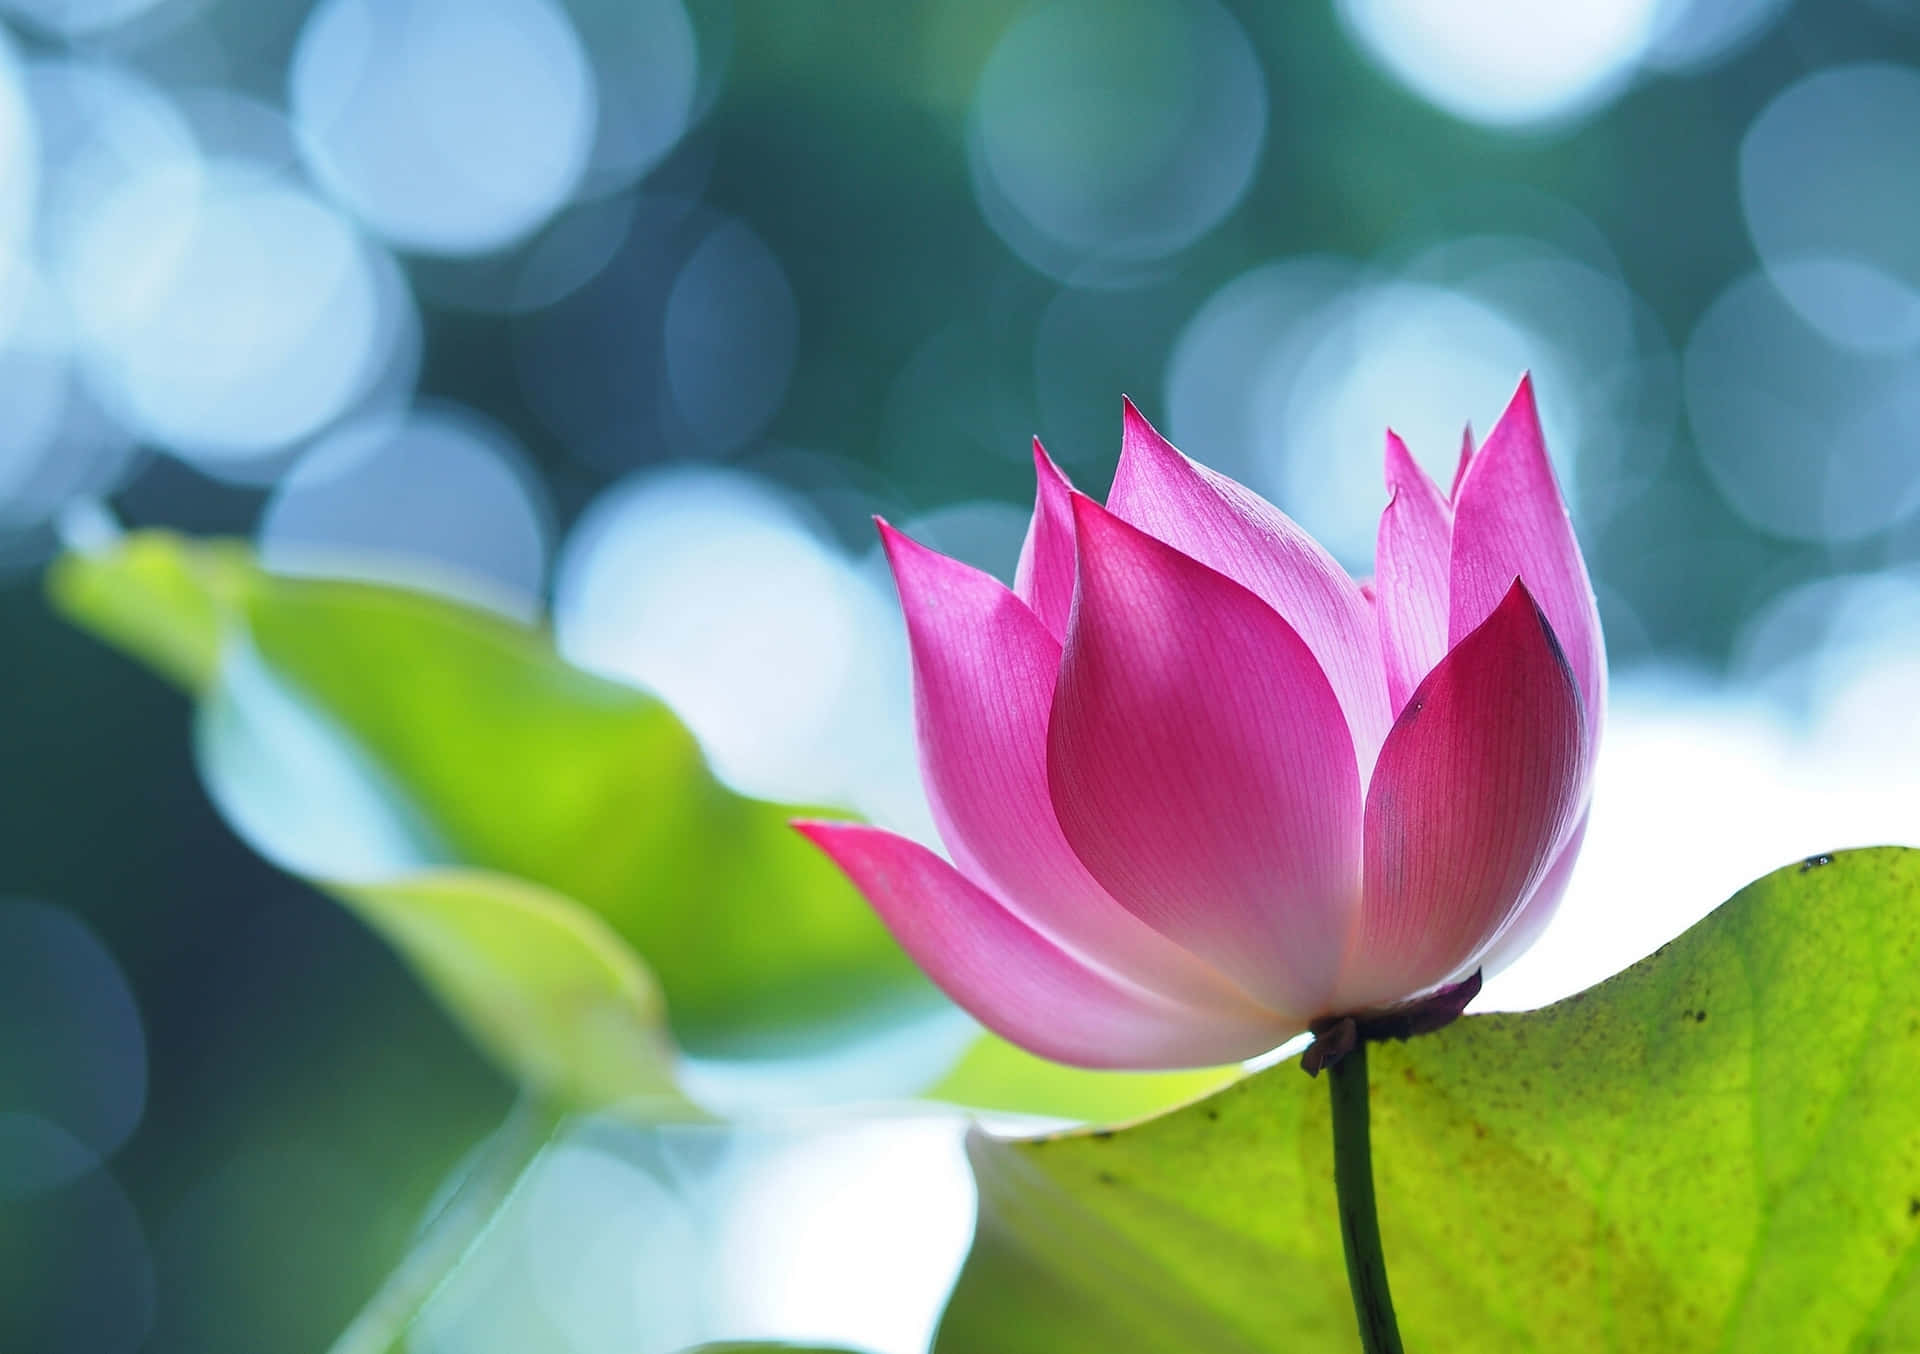 Beautiful pink lotus flower in an outdoor garden.